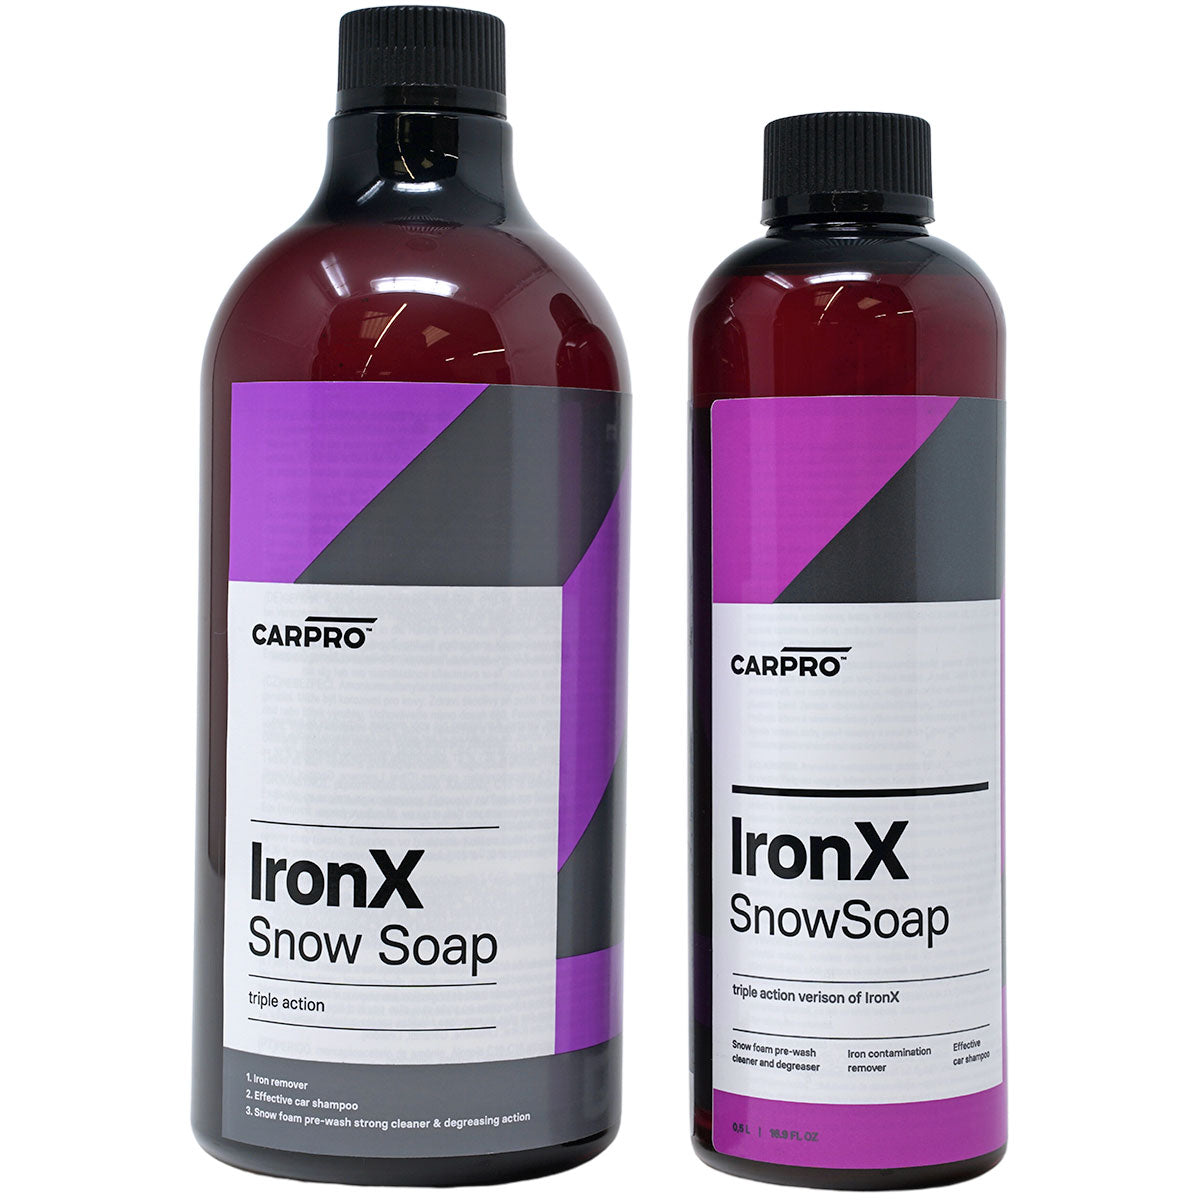 CarPro Iron X - Snow Soap